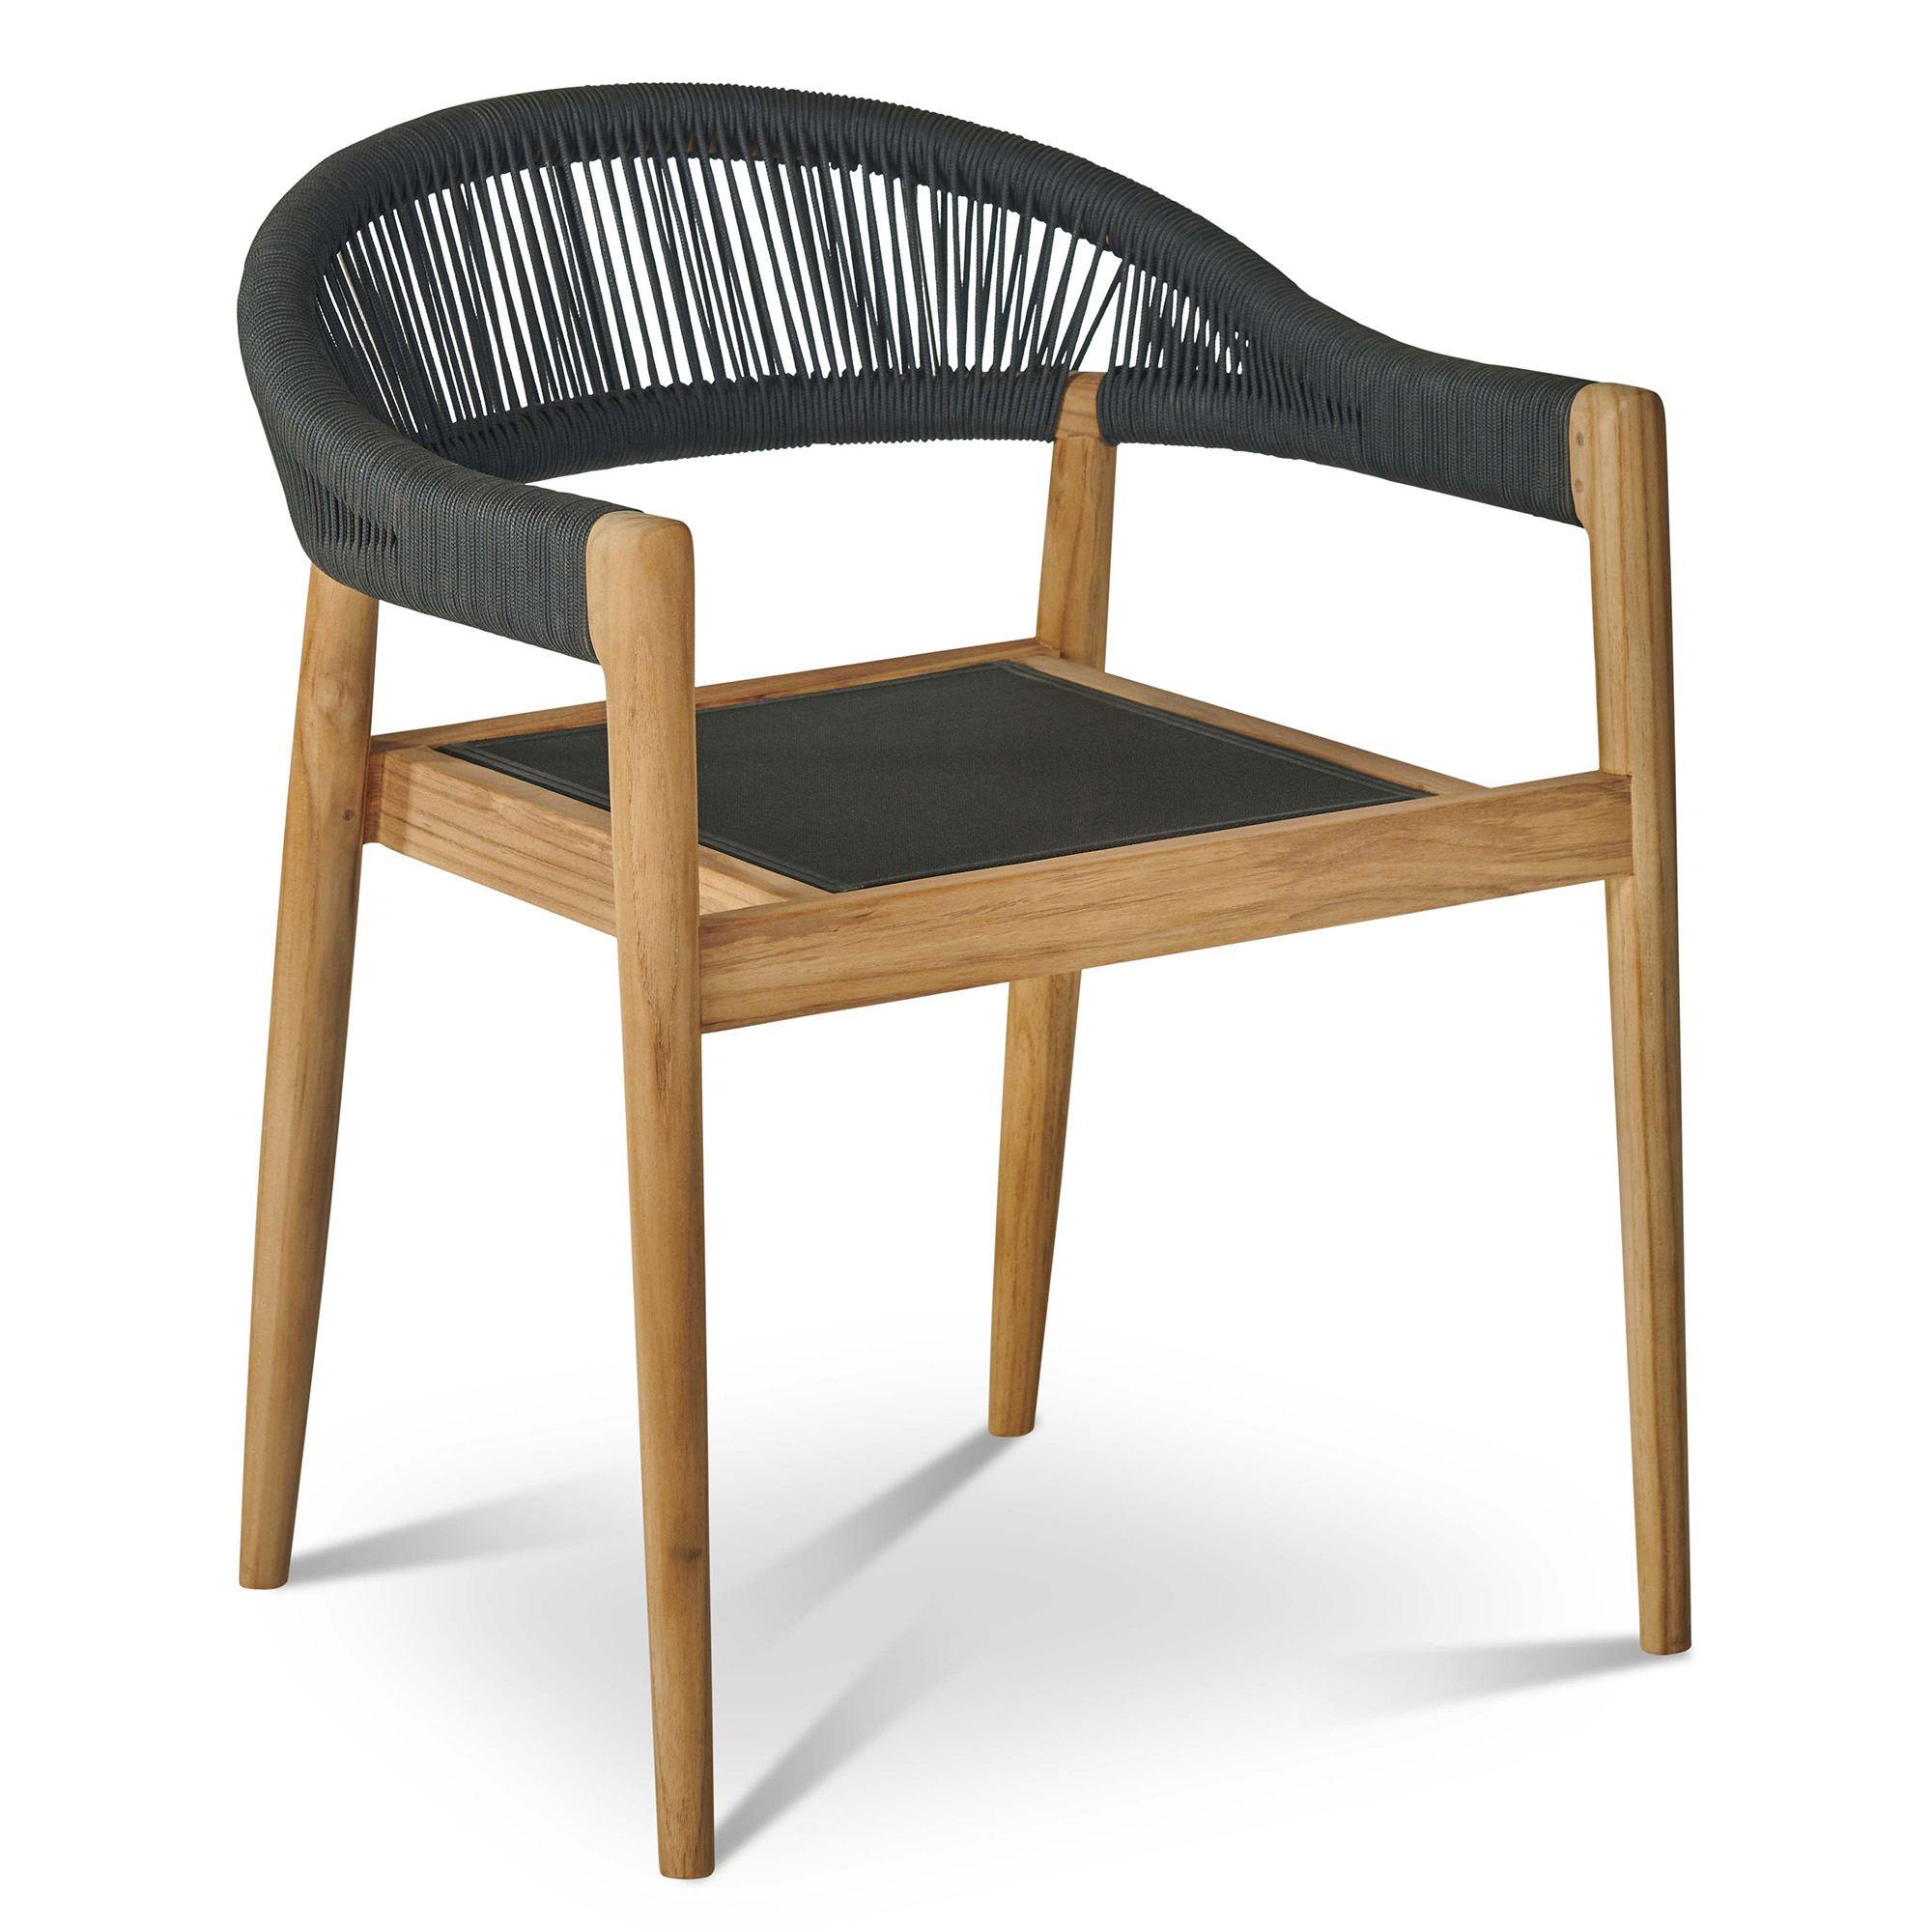 LOOMLAN Outdoor - Klint Teak Outdoor Stacking Armchair (Set of 4) - Outdoor Dining Chairs